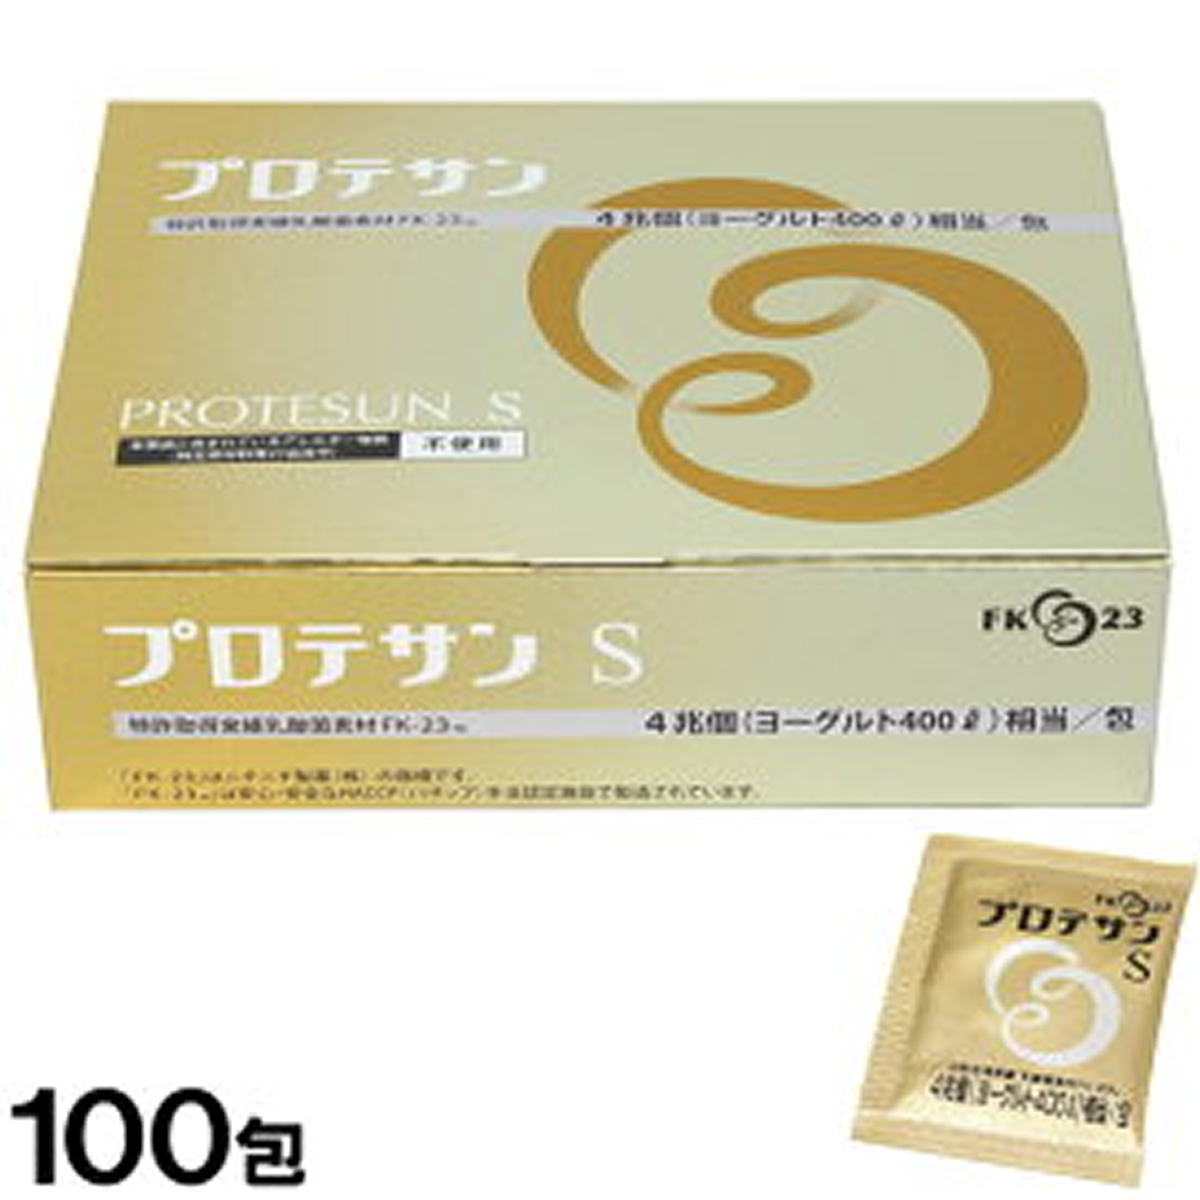 【取寄せ】ニチニチ製薬 プロテサンS 100包入